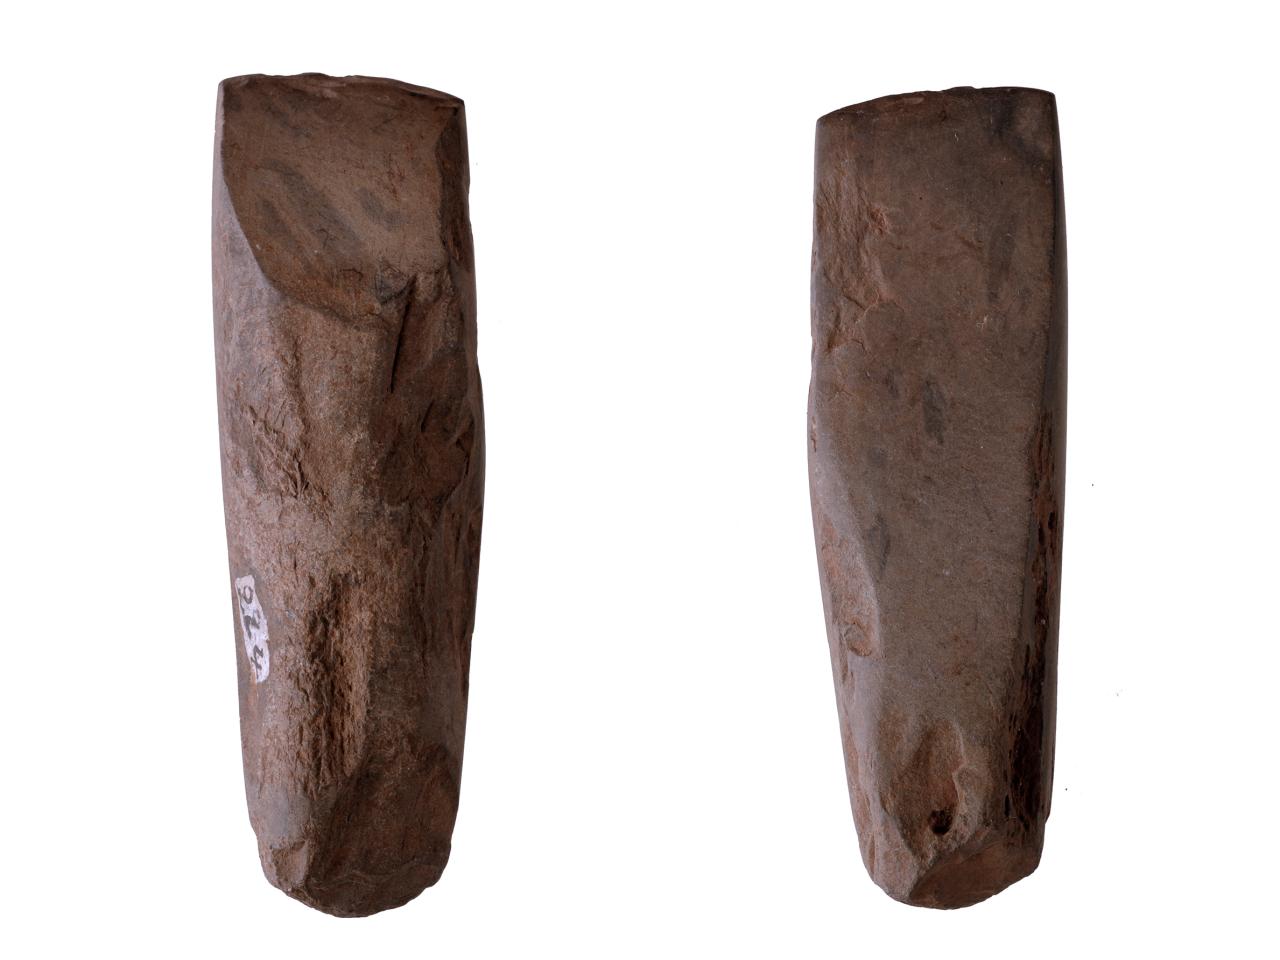 Azuela o Toki de basalto con sección transversal plano-convexo, con evidencia de trabajo en talón